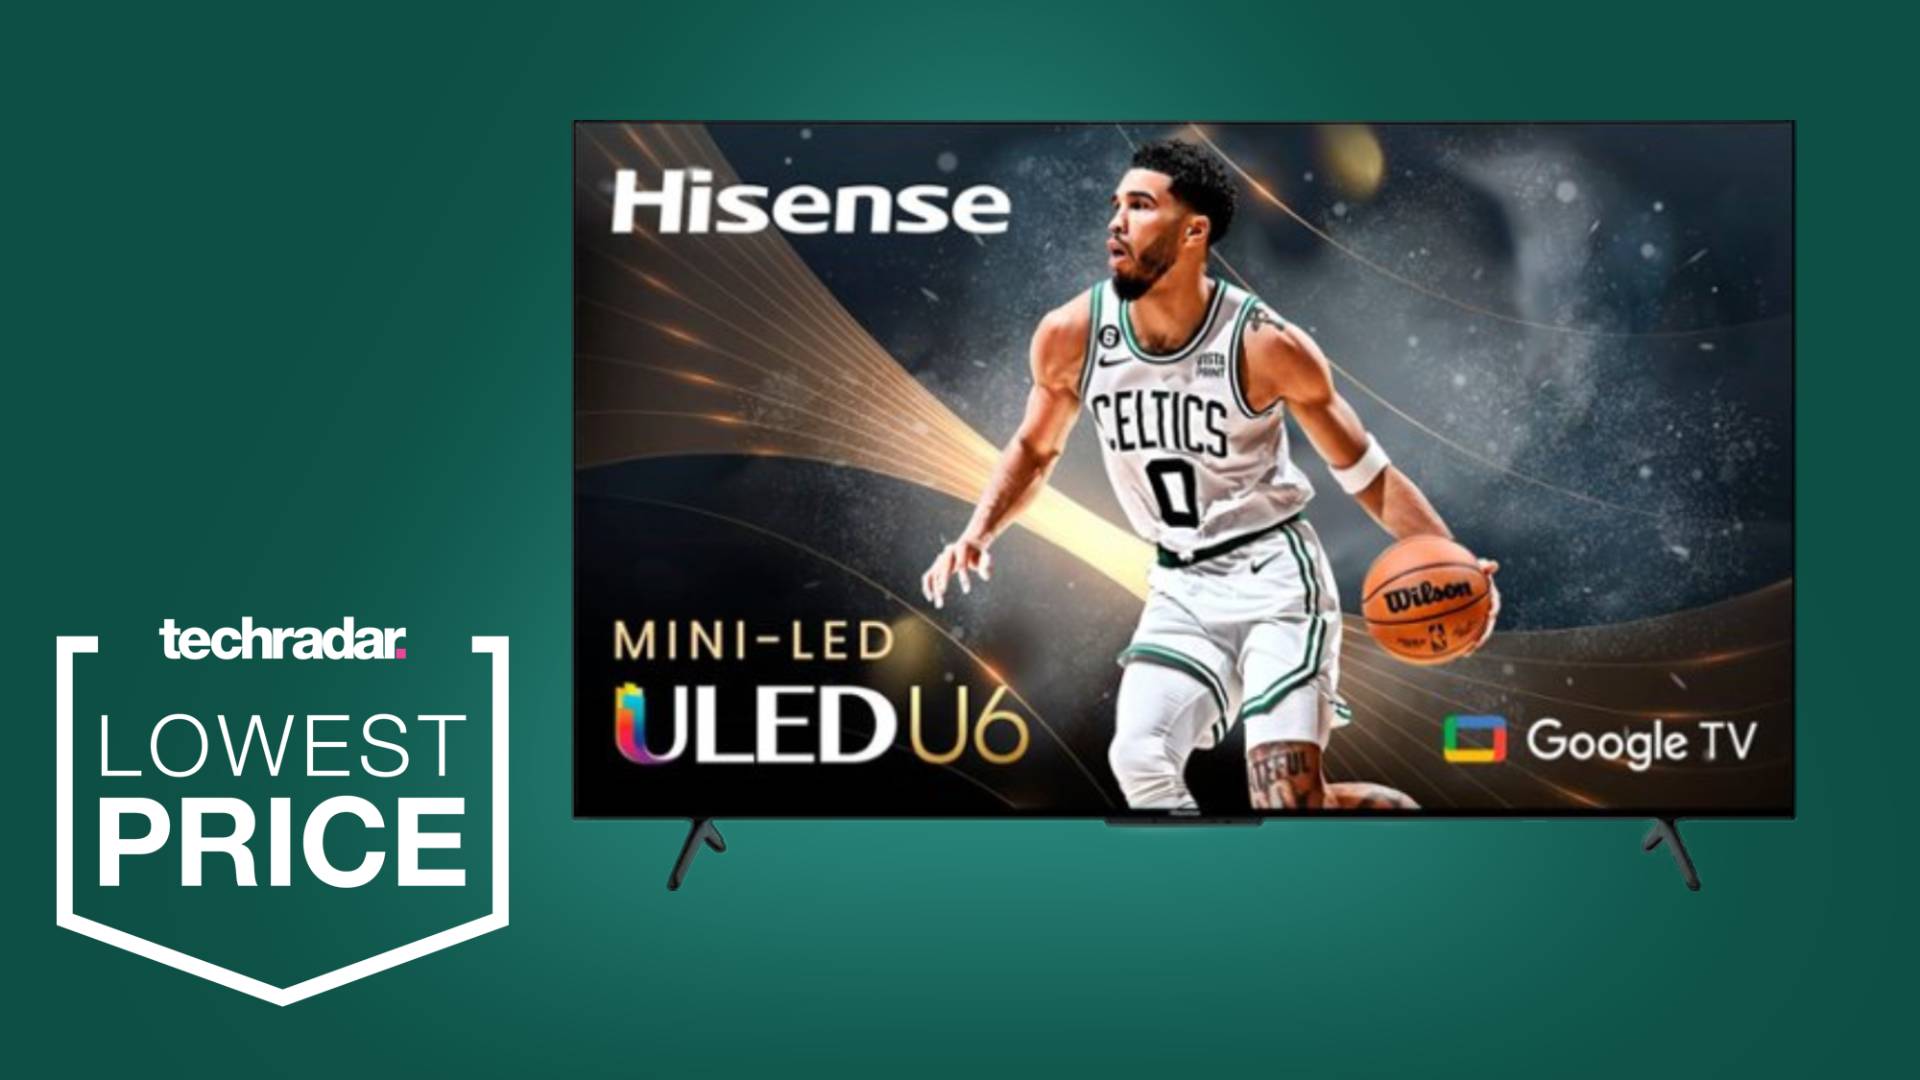 Hisense's mini-LED U6K TV arrives, starting at $500